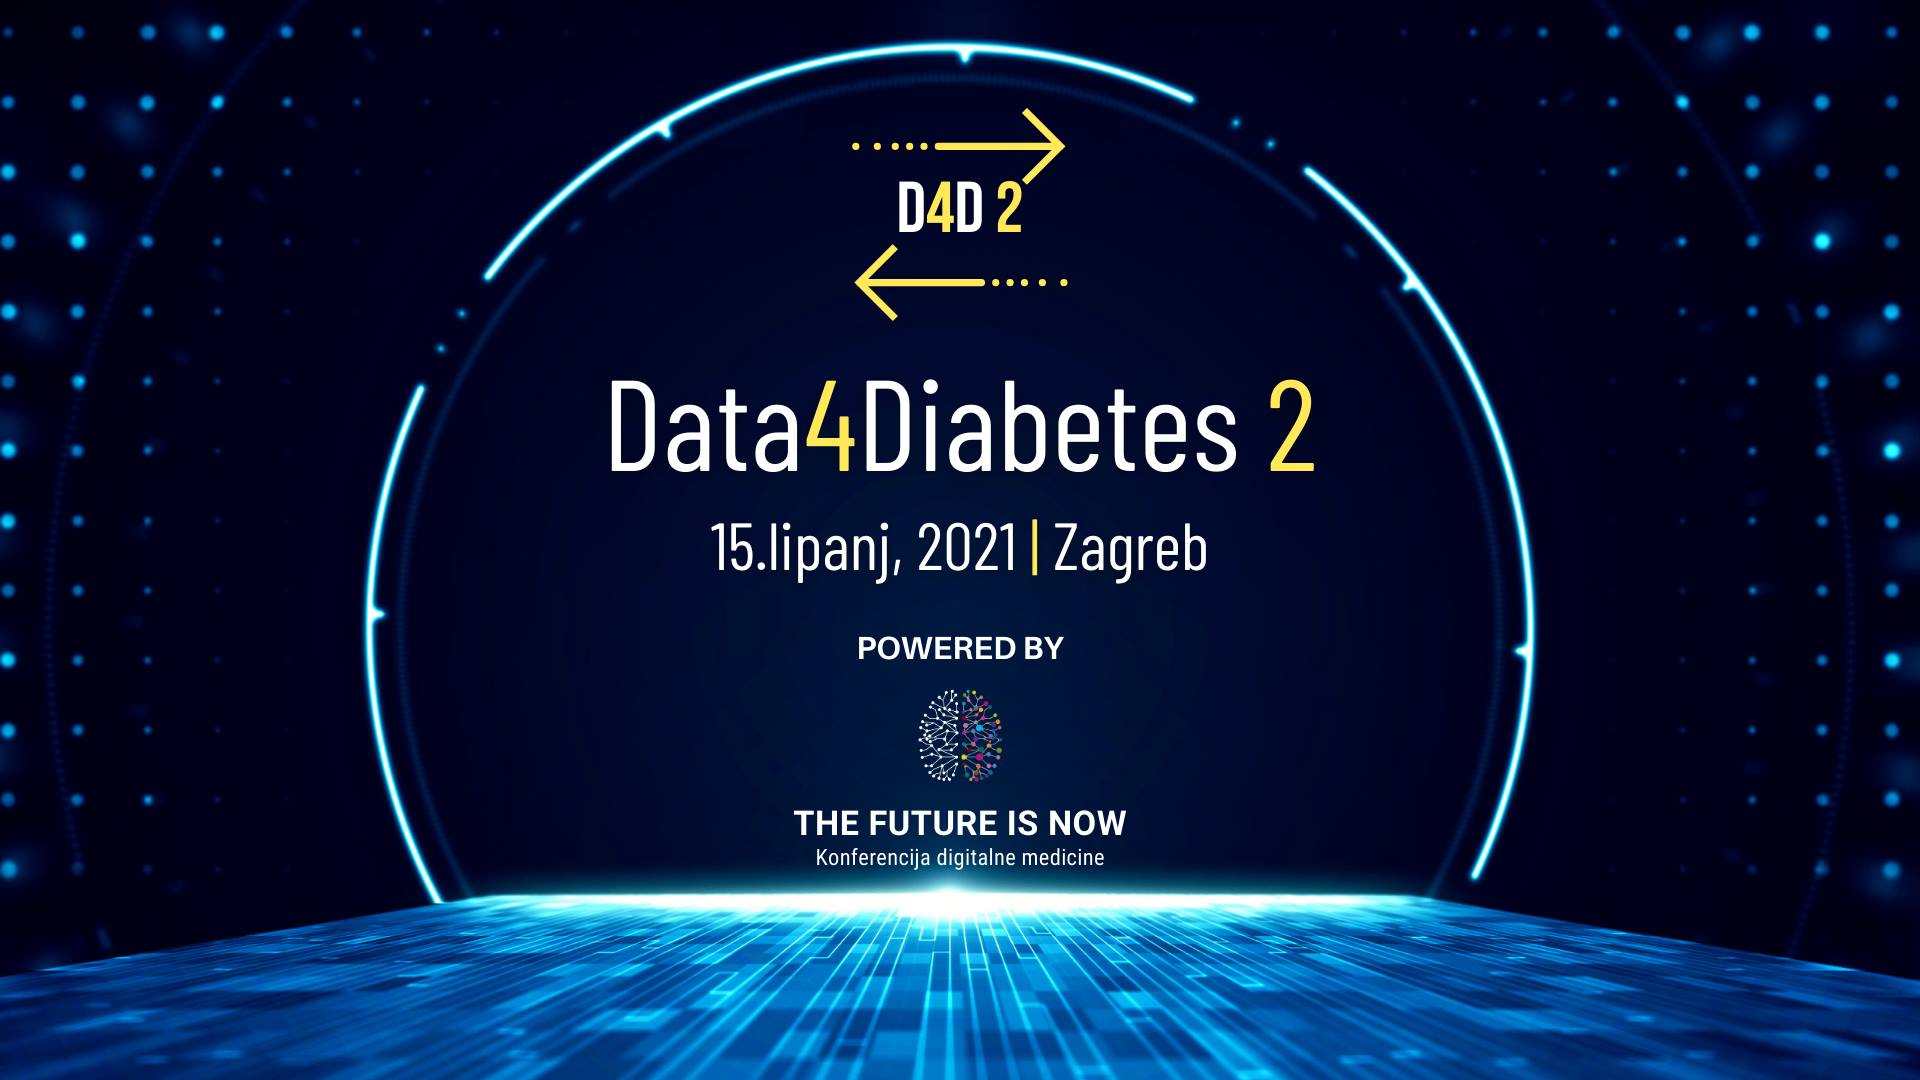 Važnost inovacija i sporta u svijetu dijabetesa – Panel diskusija na D4D konferenciji